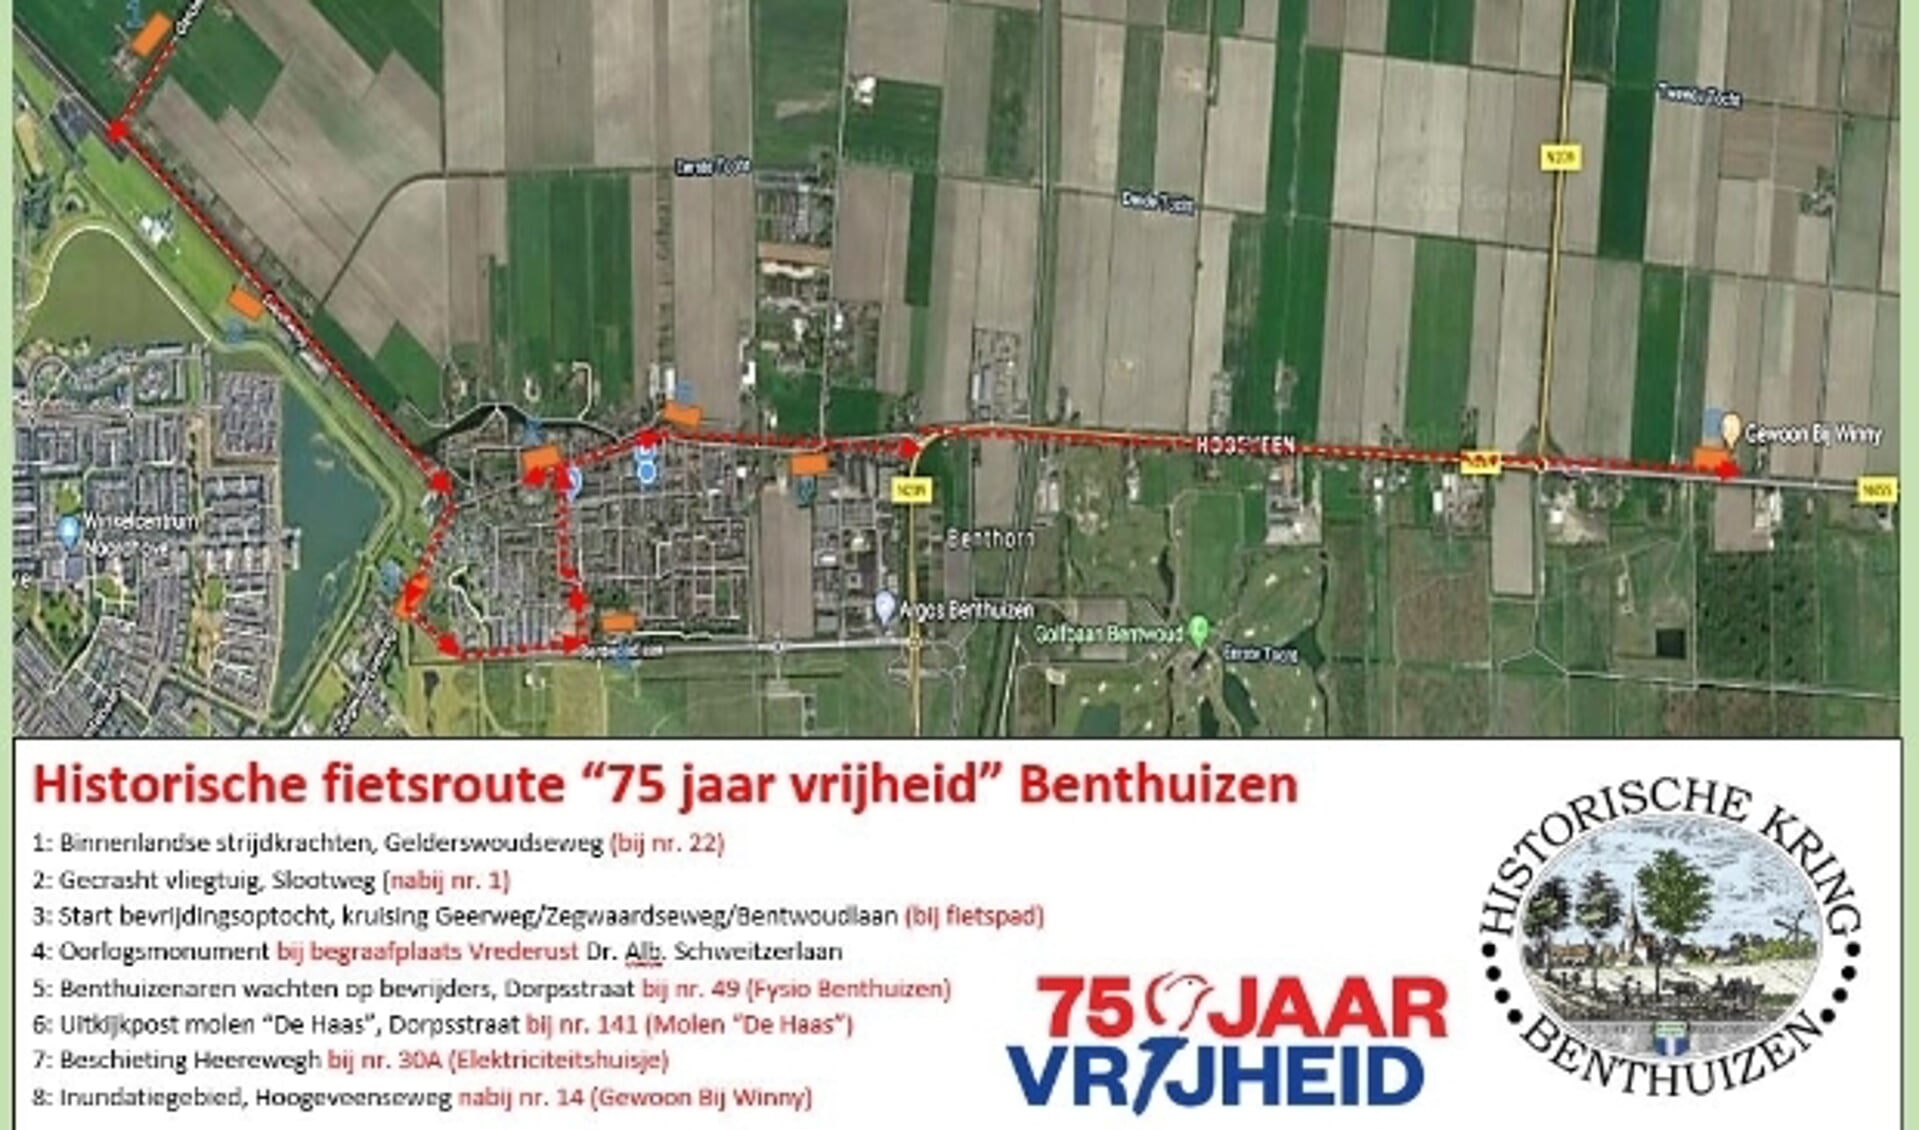 U kunt vanaf heden langs historische plekken in Benthuizen fietsen.